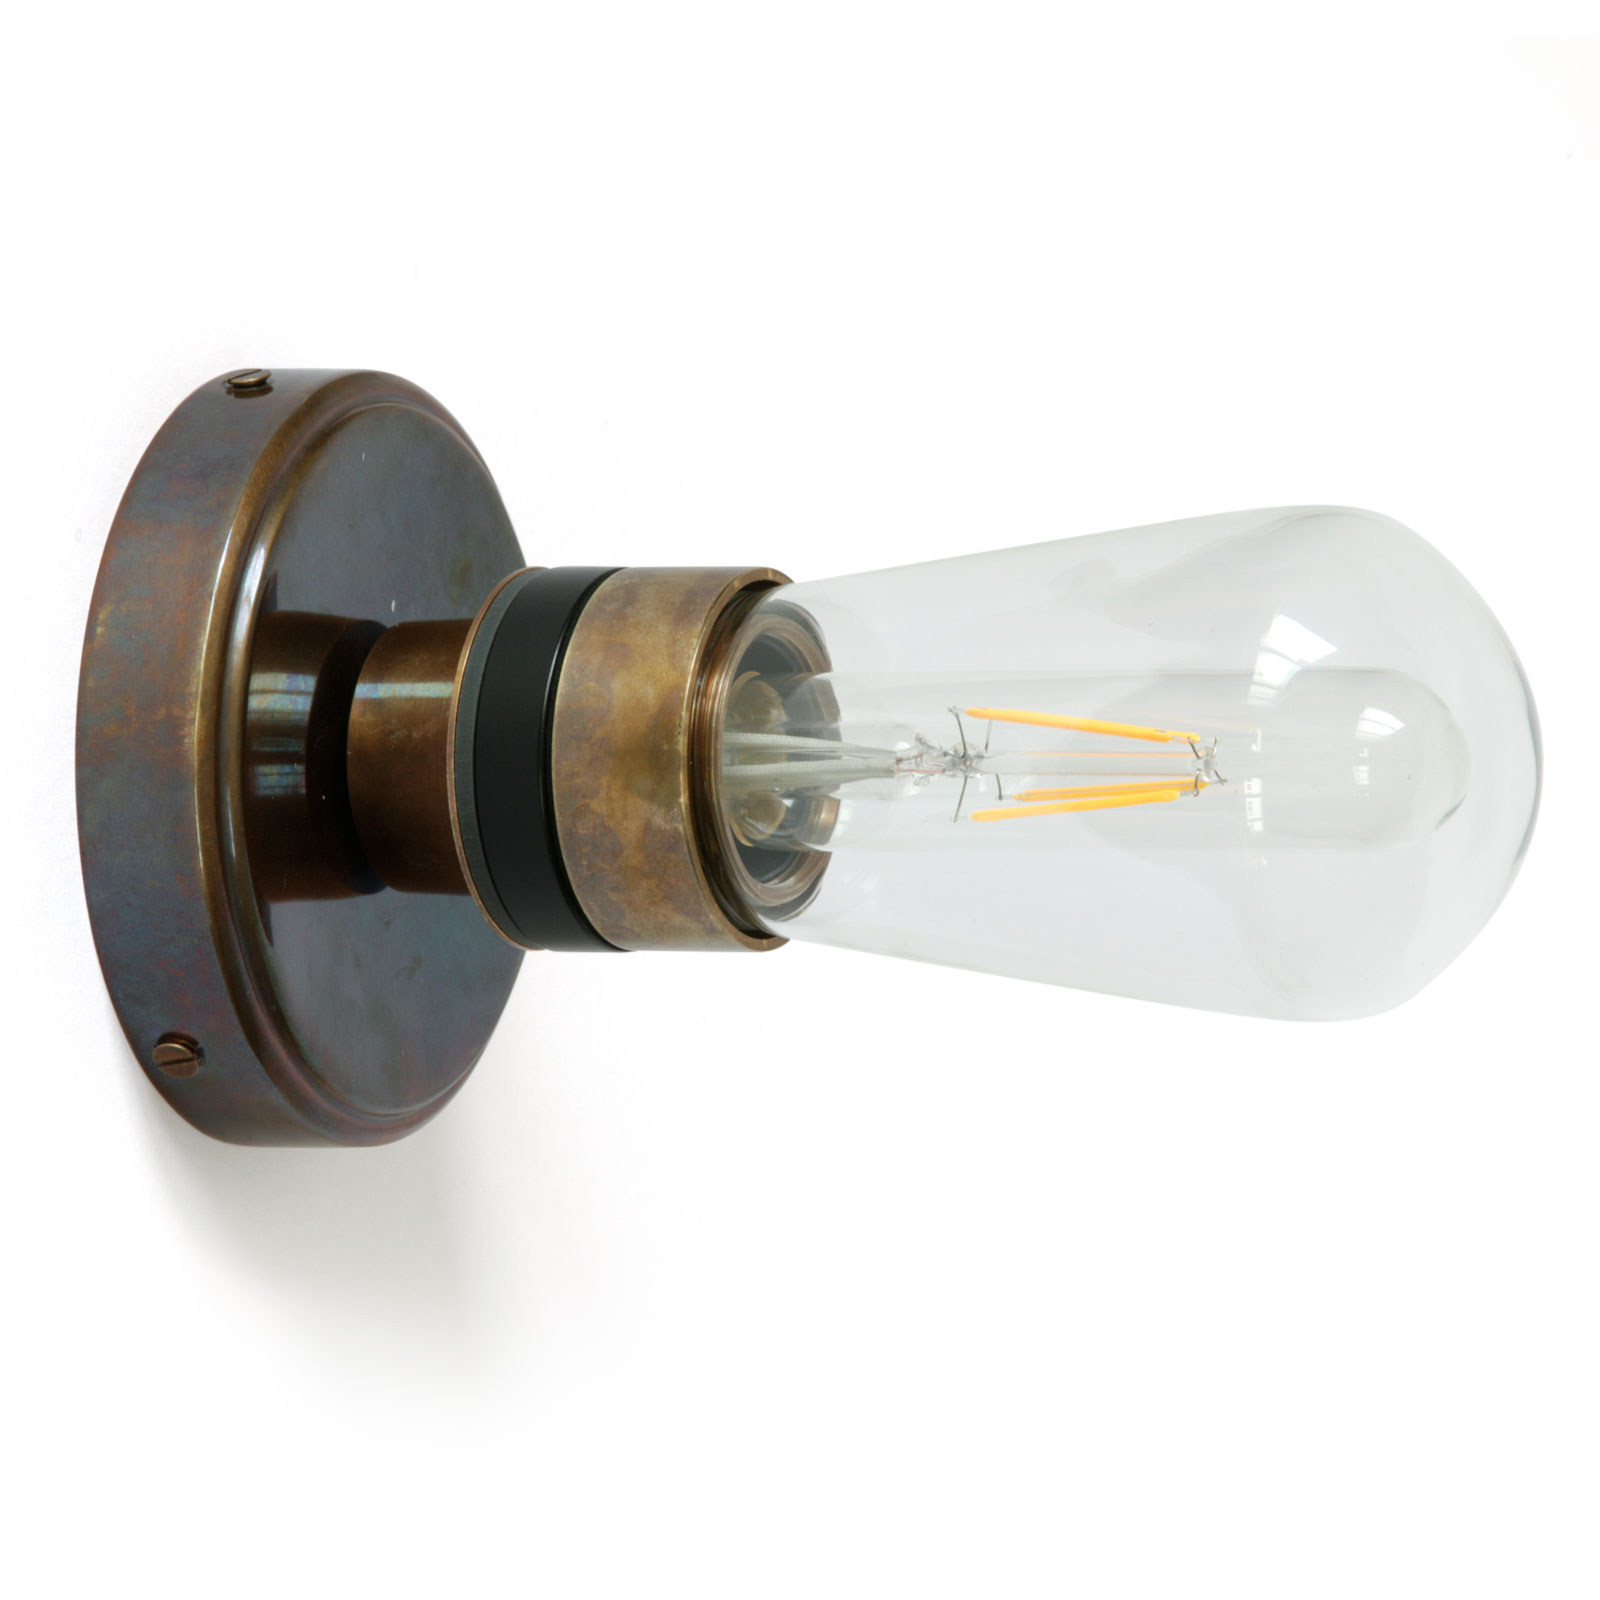 Einfache Badezimmer-Wandlampe mit Glaskolben, IP65: Die Badezimmer-Wandlampe mit rustikal-antiker Anmutung in der Ausführung „Alt-Messing patiniert“